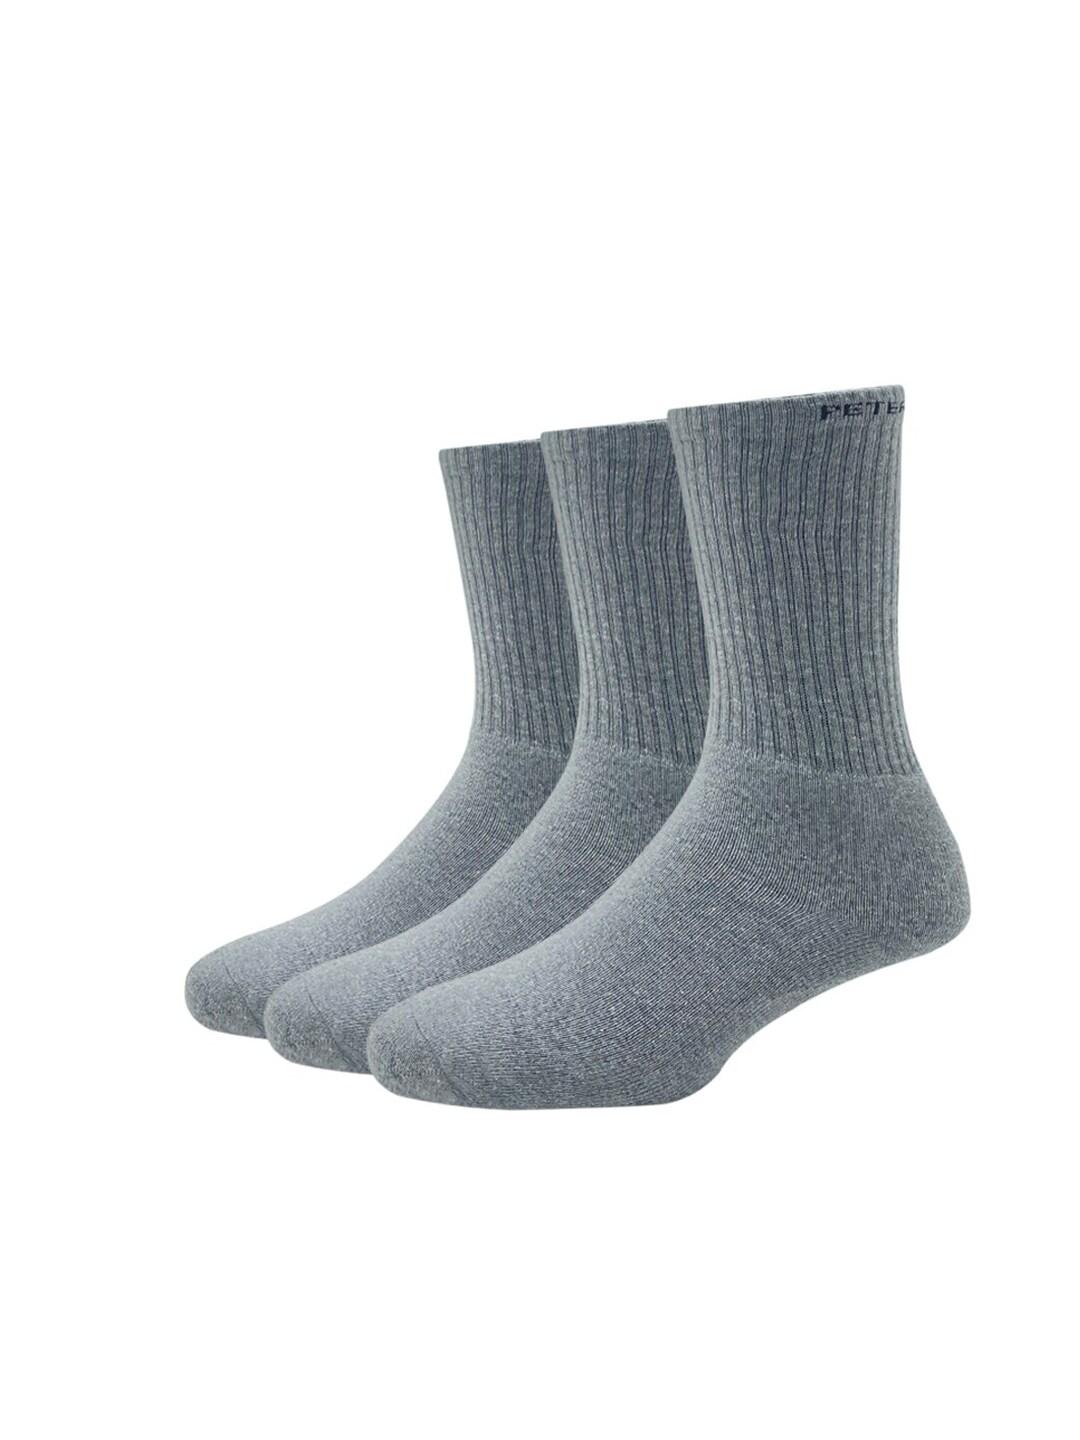 peter-england-men-pack-of-3-cotton-full-length-socks